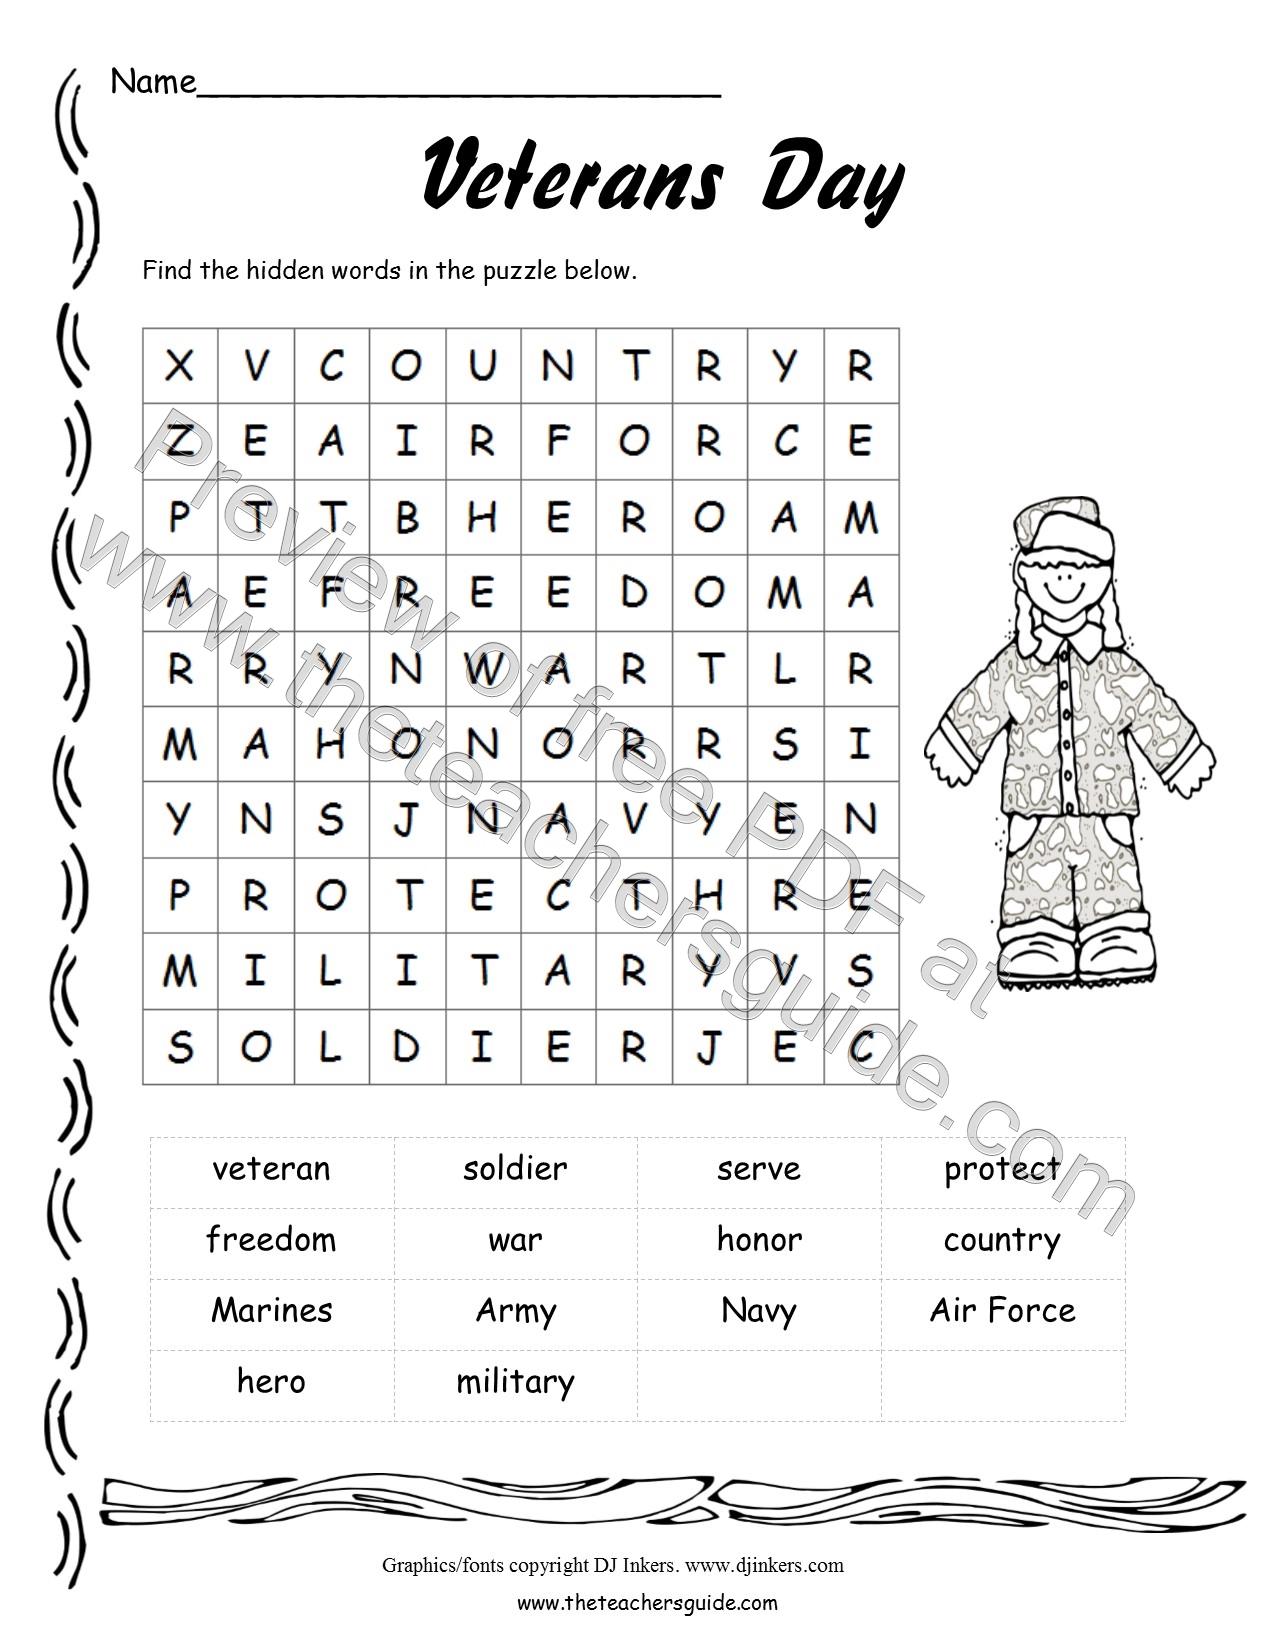 Veterans Day Activities For Children